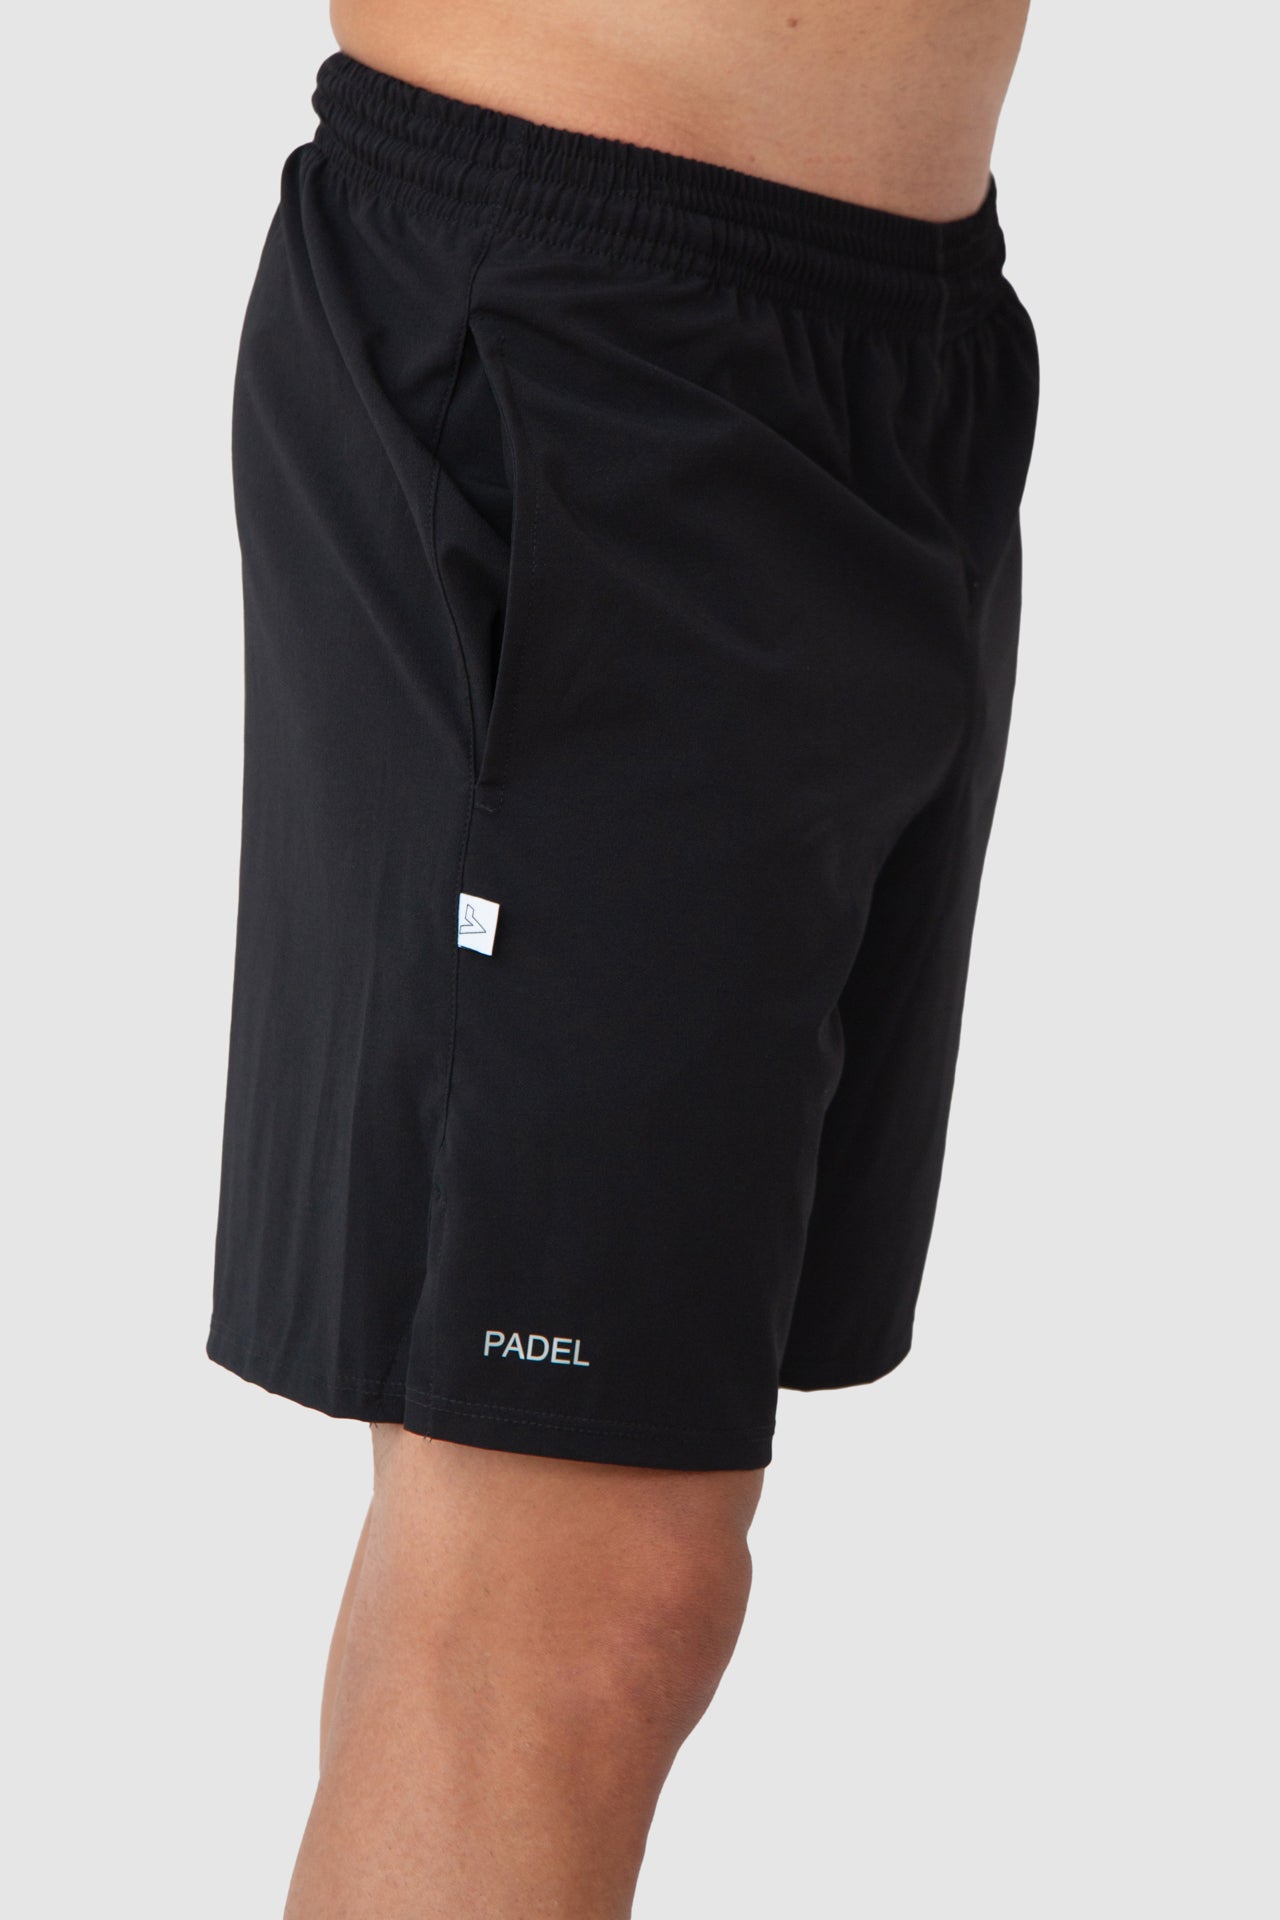 Pantaloneta Padel Negra